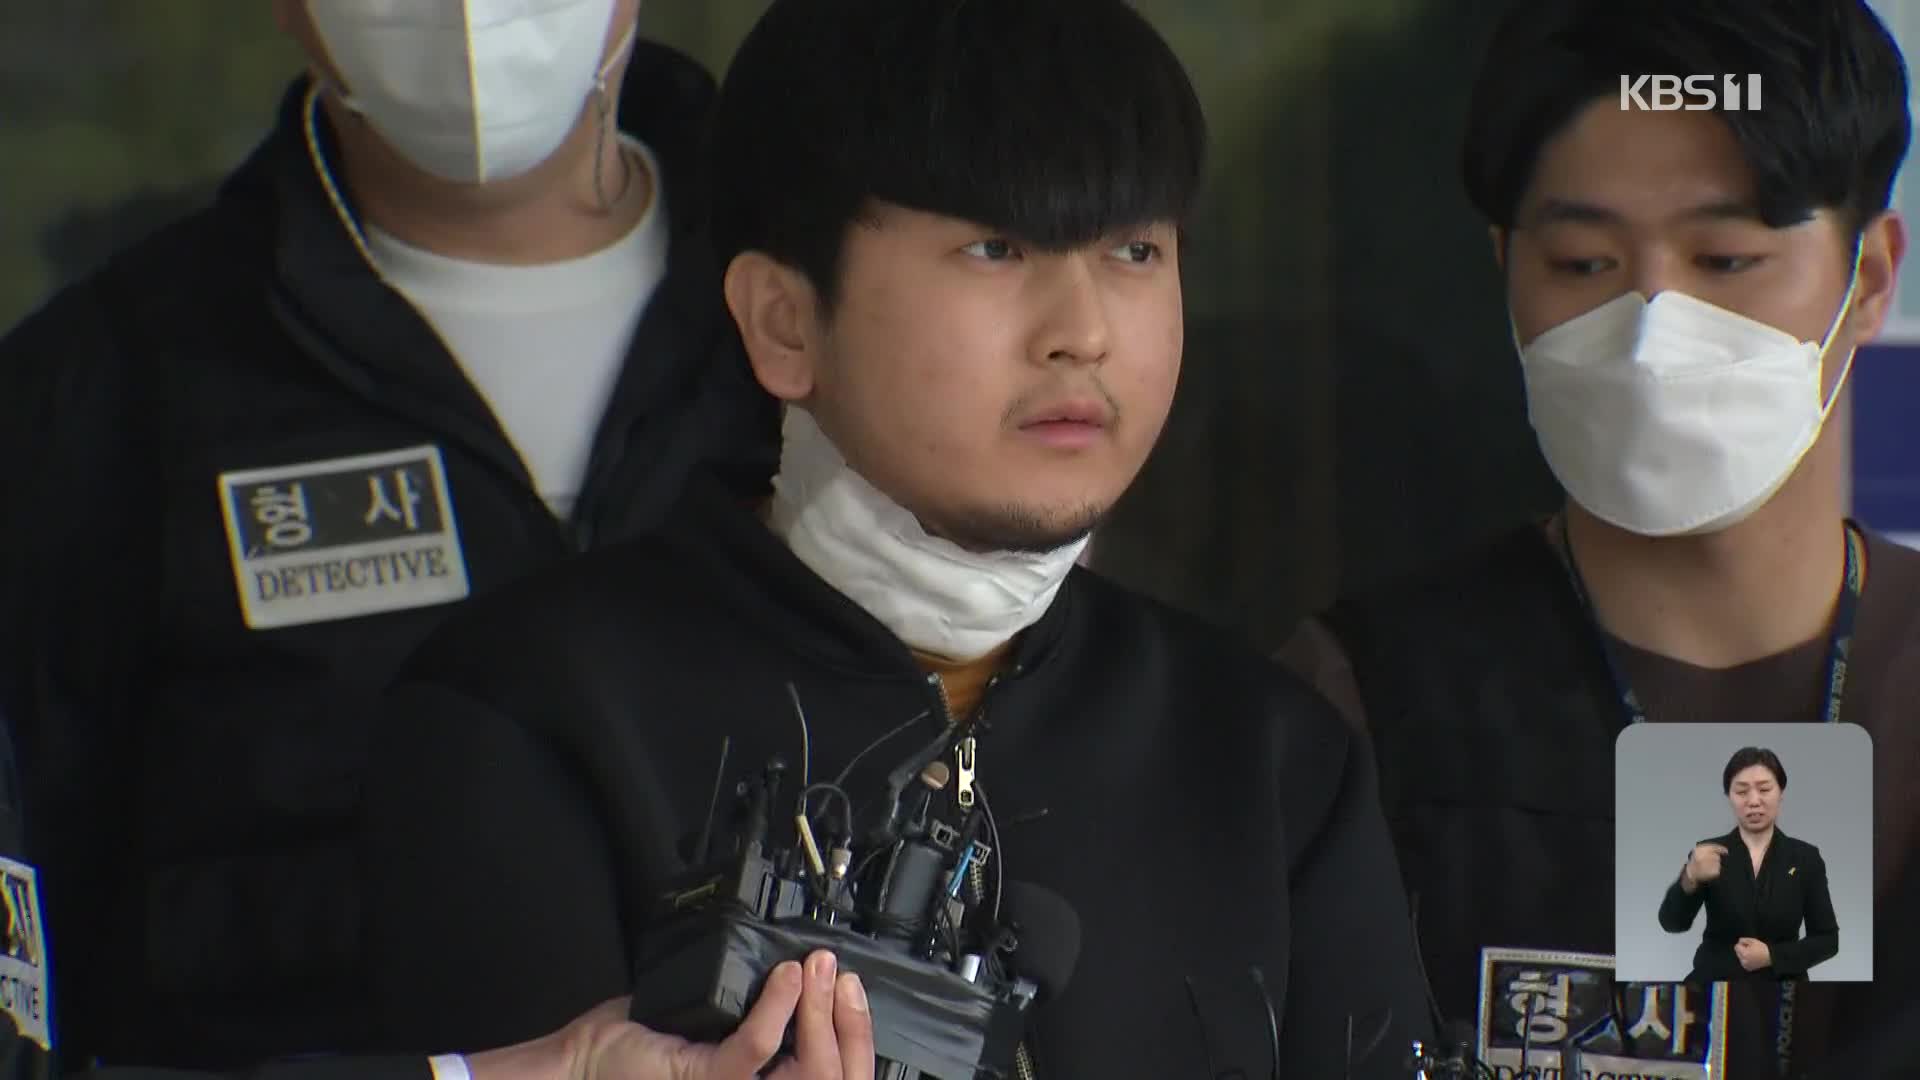 김태현, 일주일 전부터 범행 준비…“연락 안 받아 배신감”